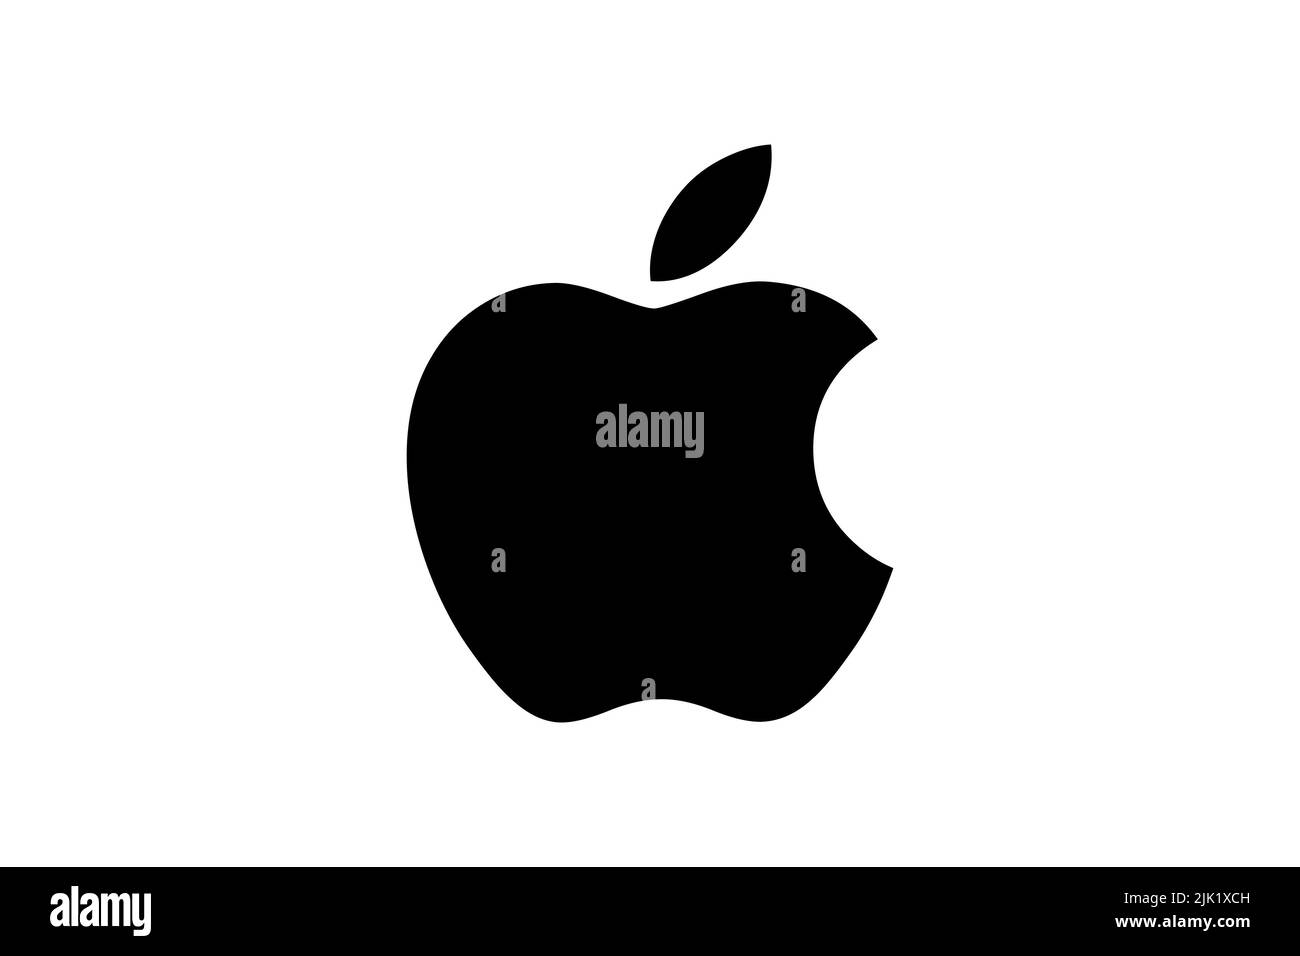 Apple University, Logo, White background Stock Photo - Alamy